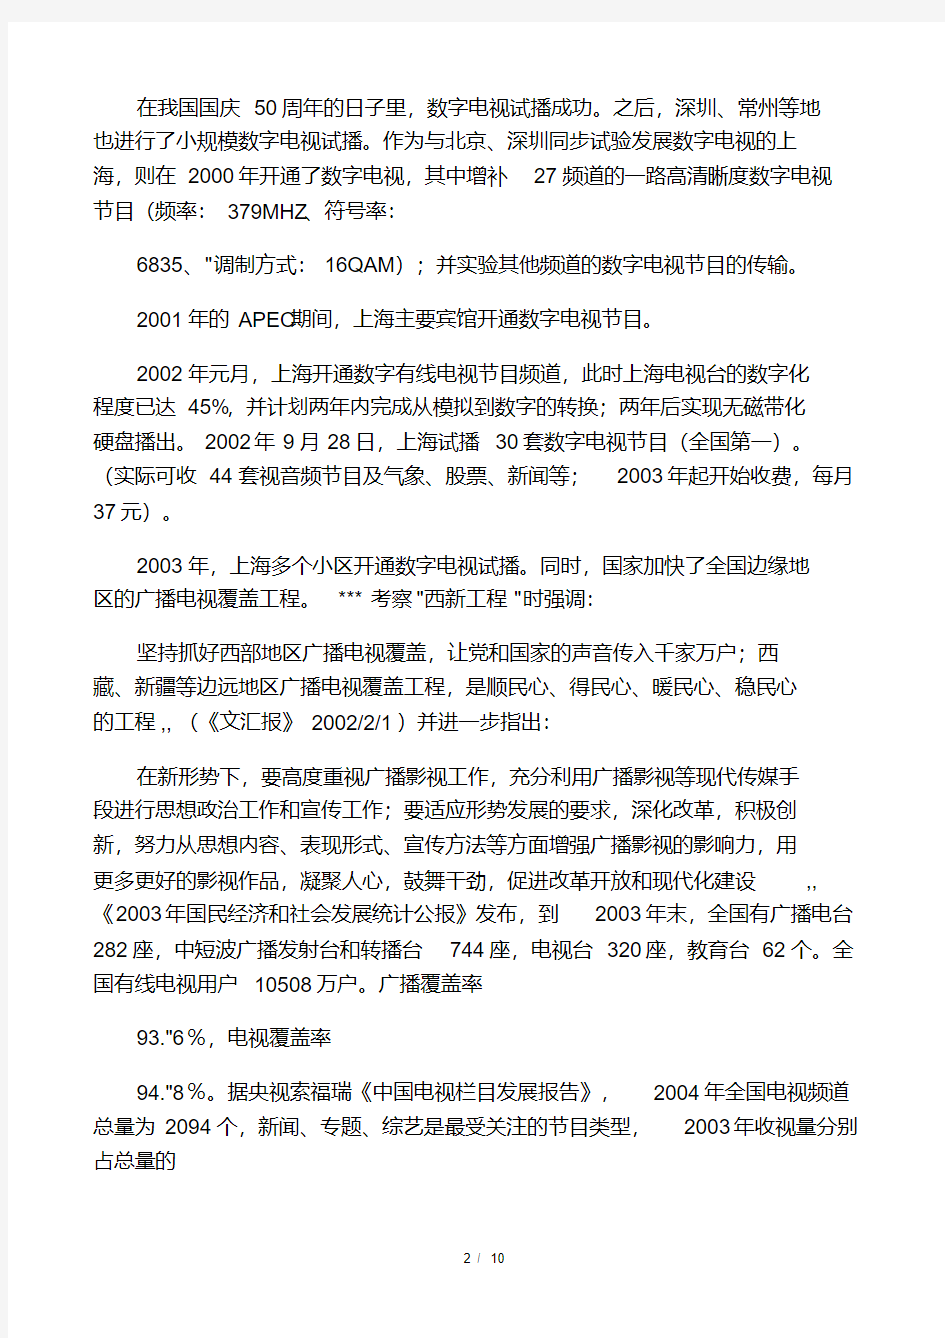 中国电视发展历程.pdf